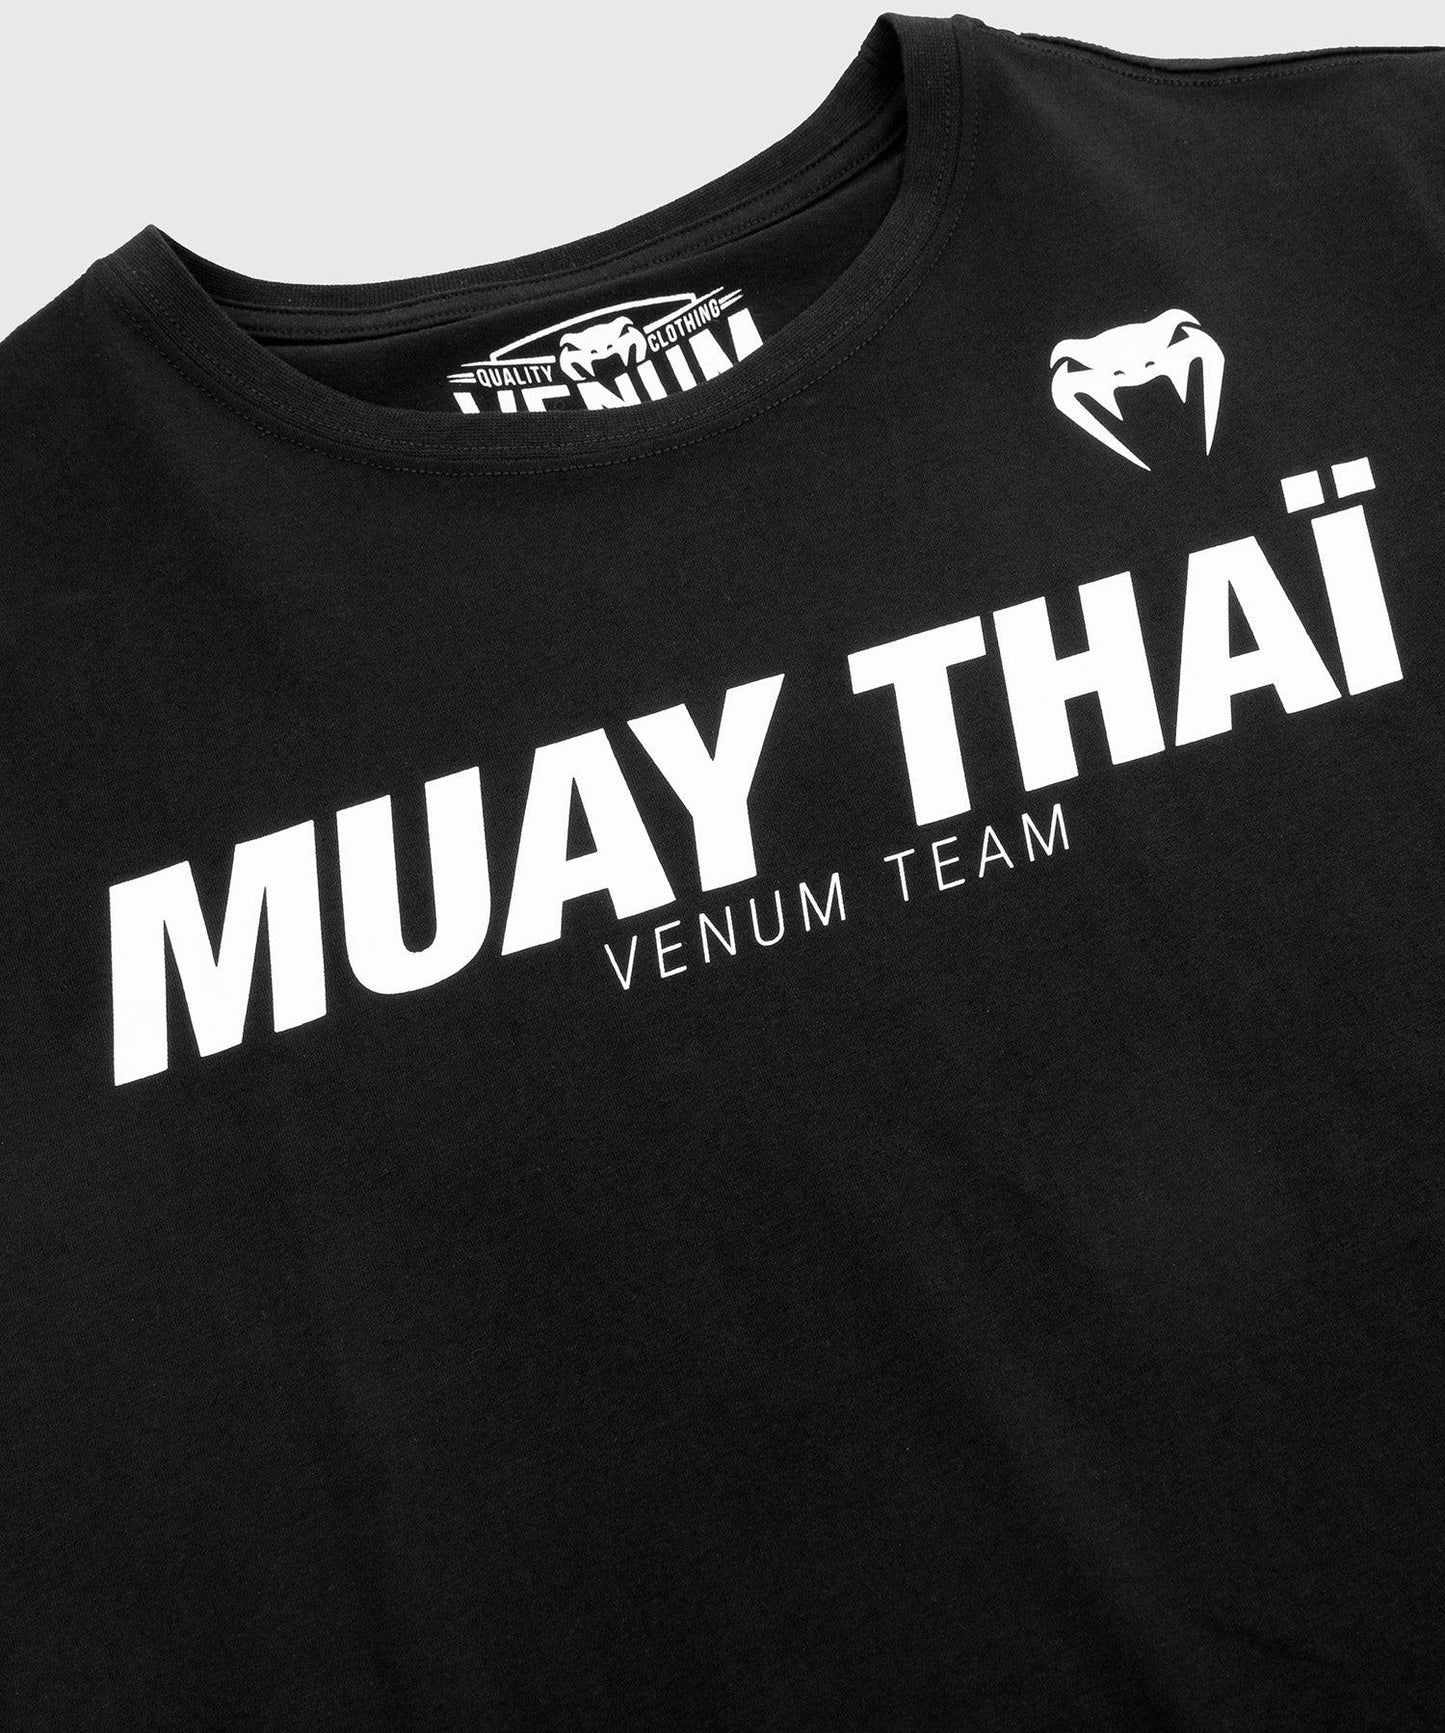 Venum Muay Thai VT T-shirt - Black/White